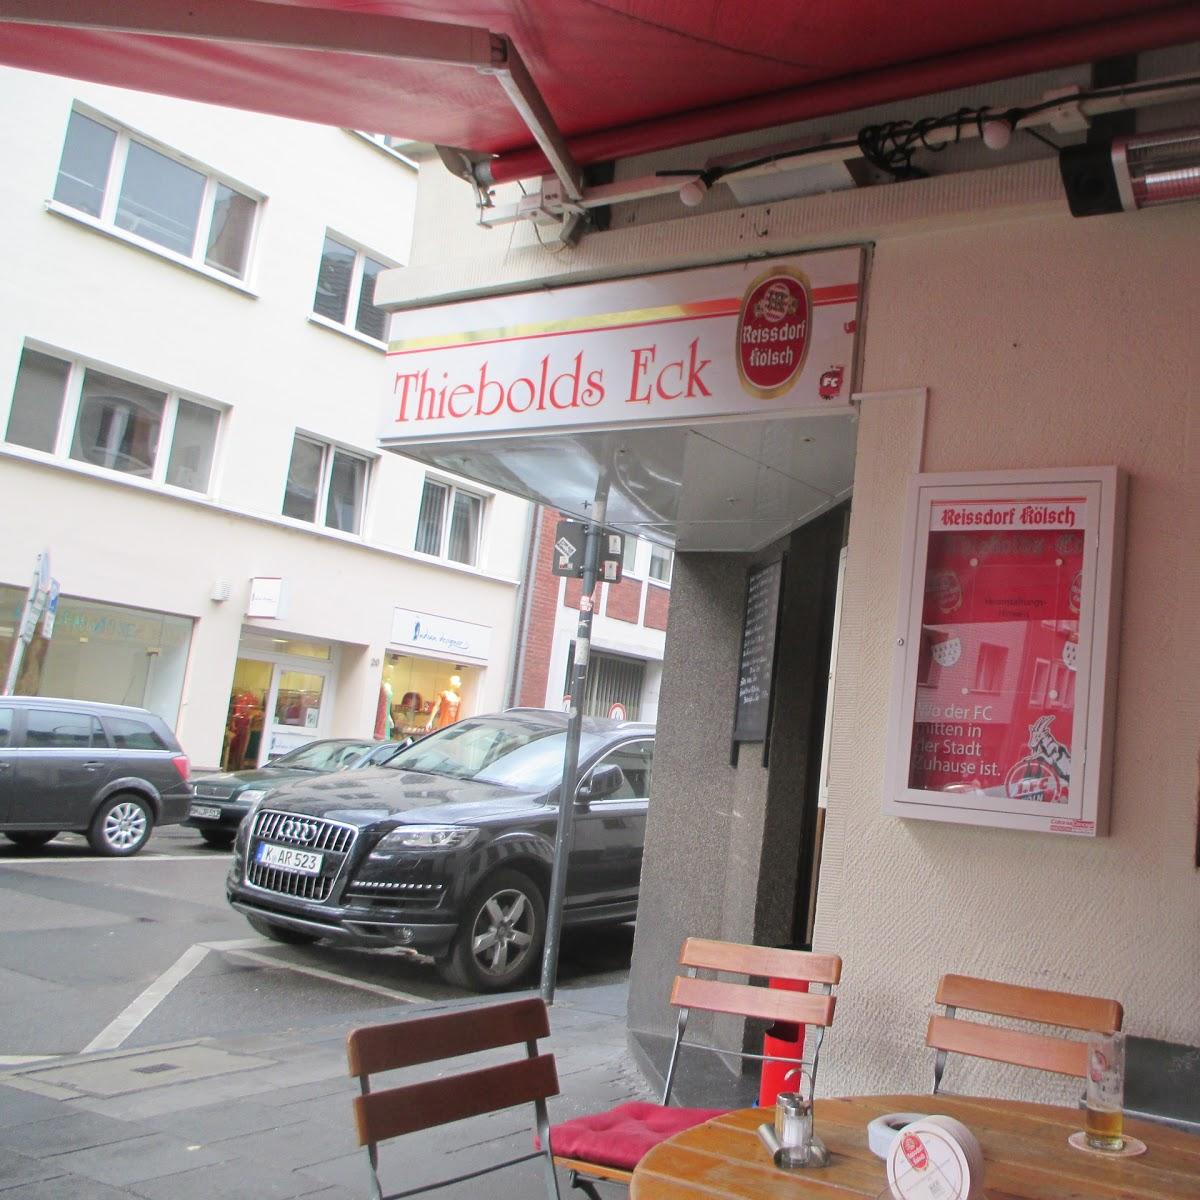 Restaurant "Thiebolds-Eck" in Köln